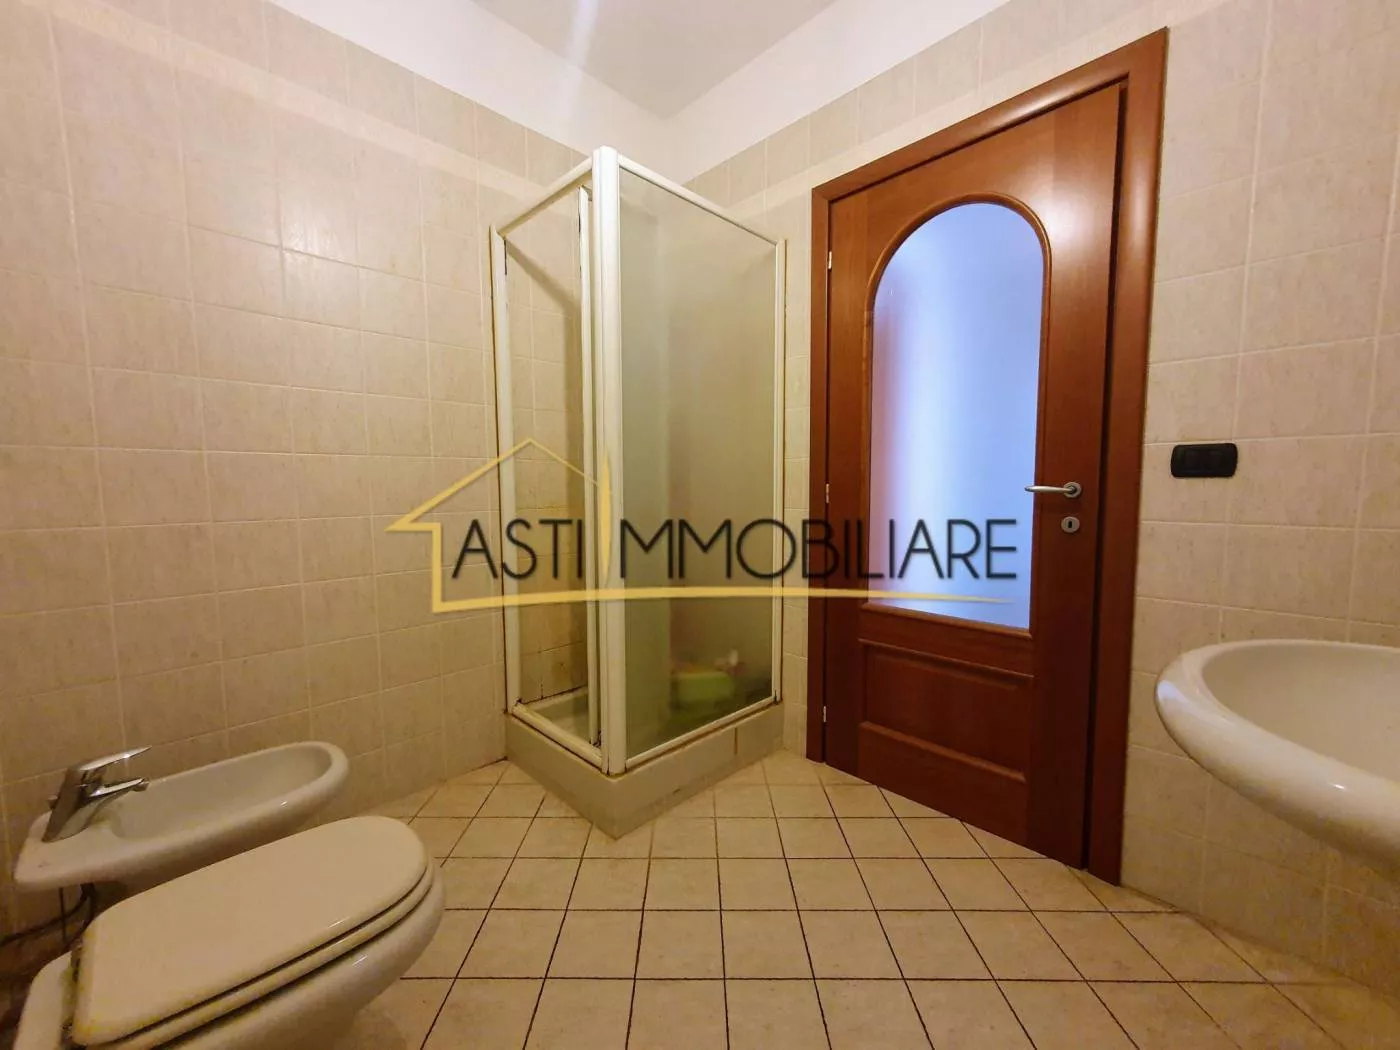 Immagine per Quadrilocale in Vendita a Asti Via Guttuari 28